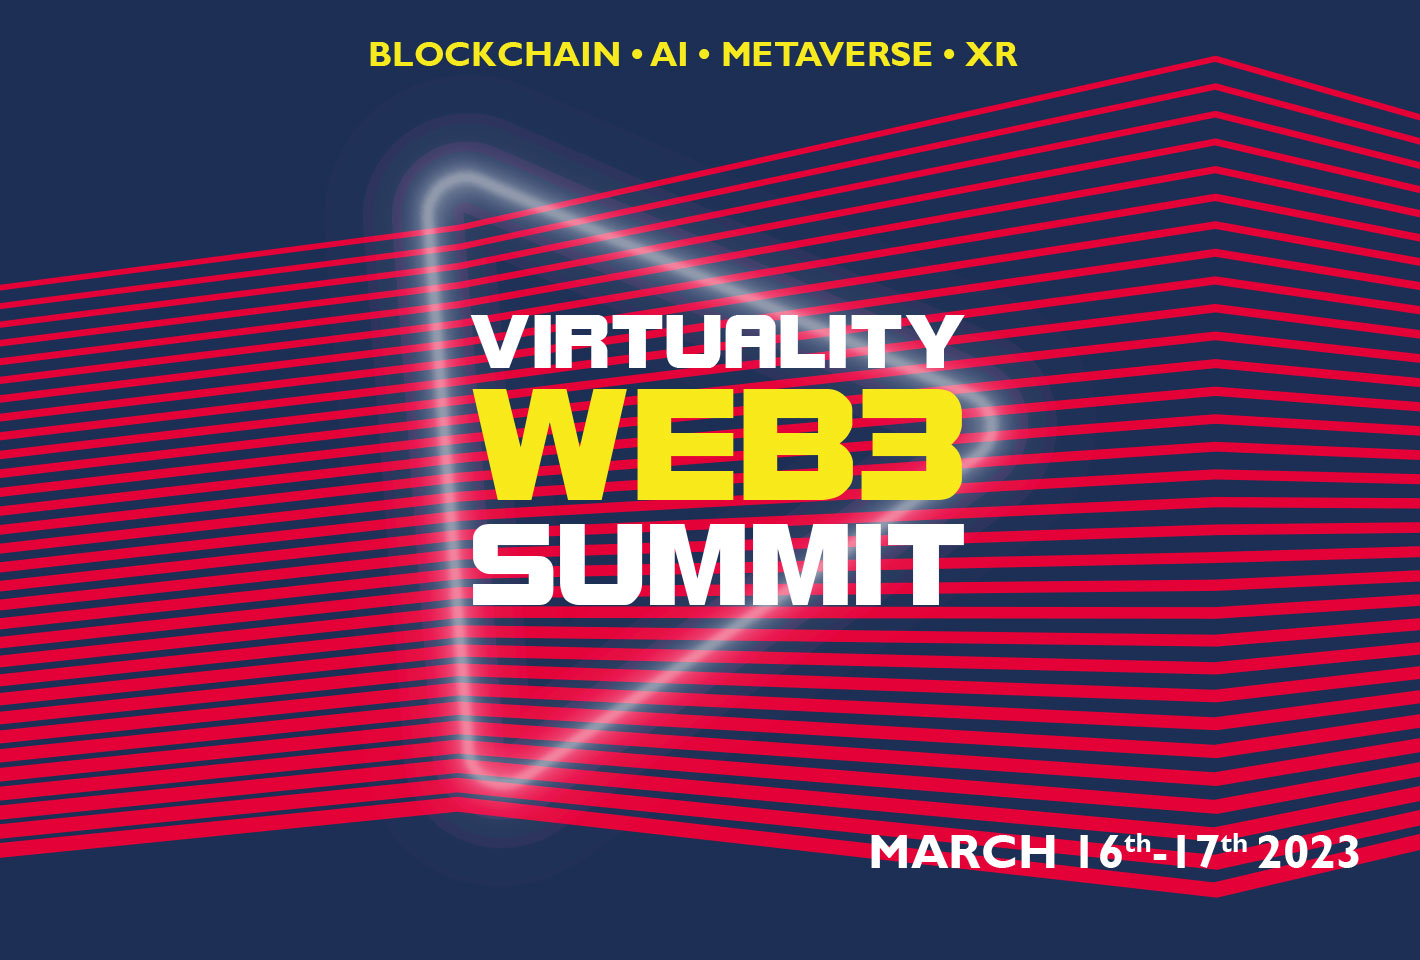 Virtuality WEB3 Summit